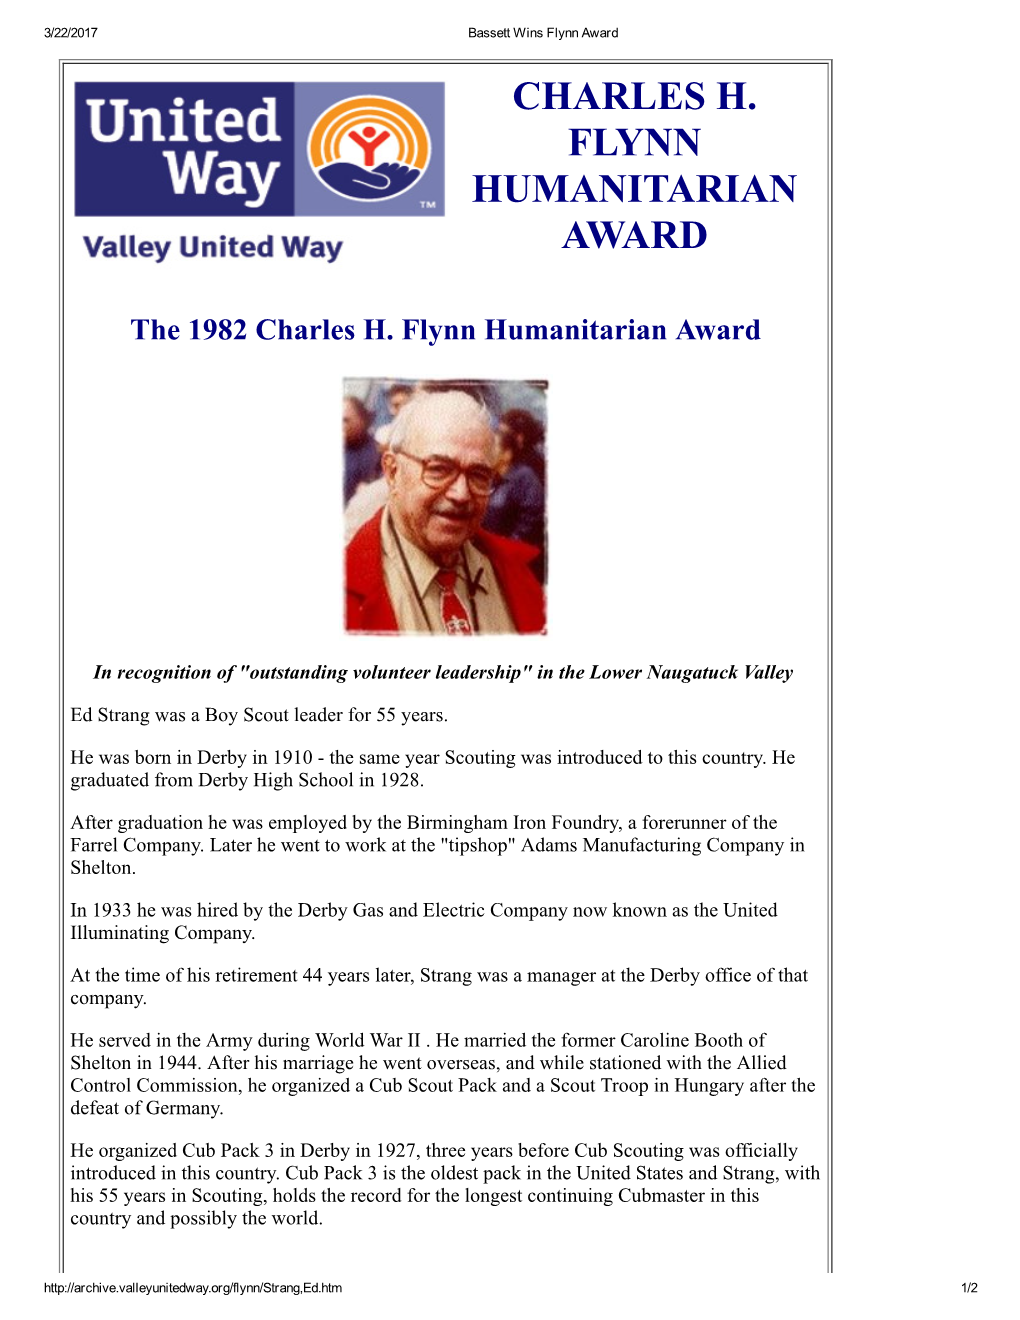 Charles H. Flynn Humanitarian Award